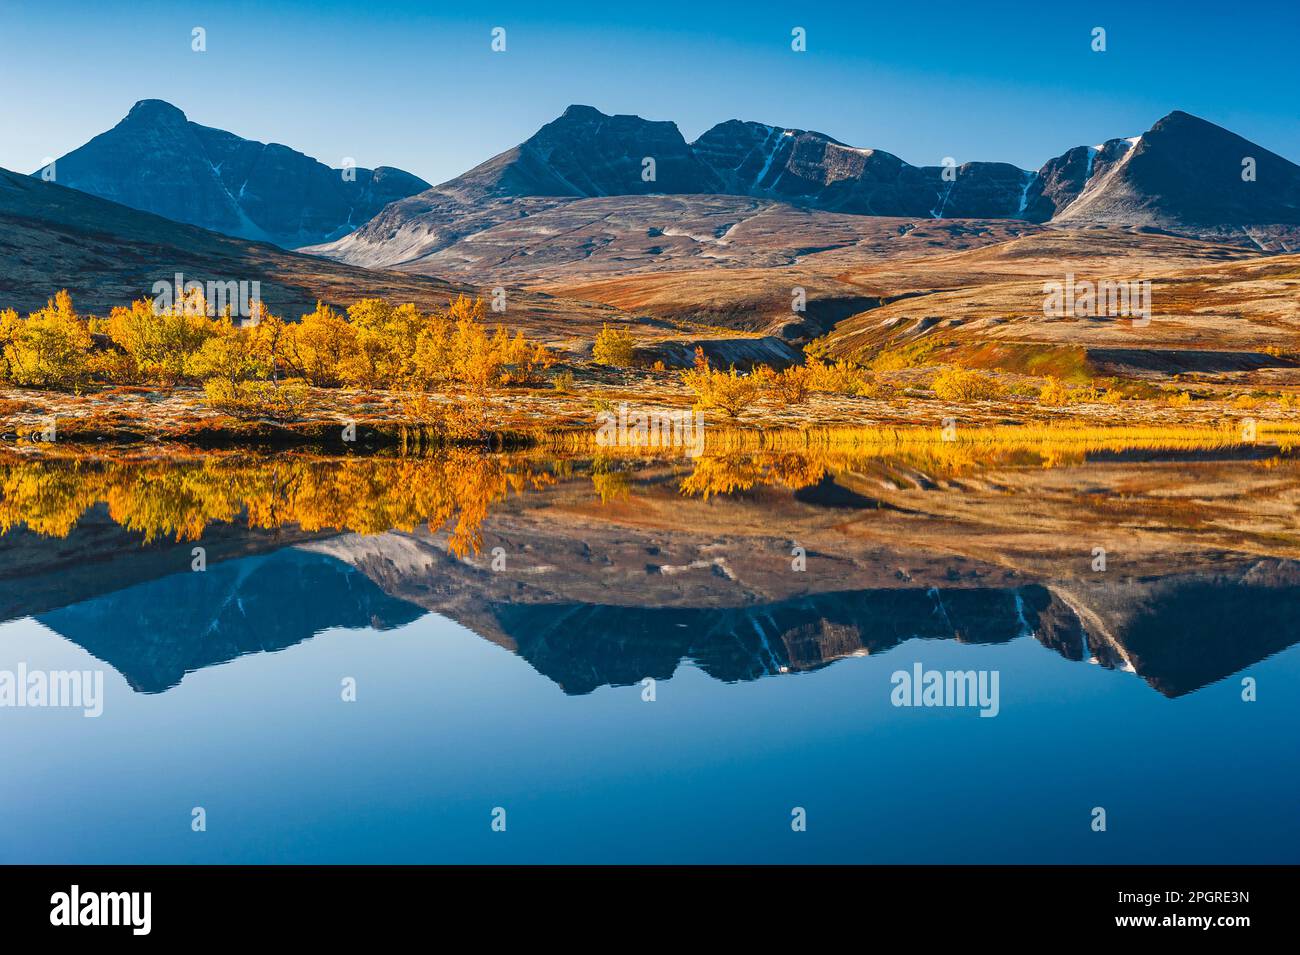 Le reflet d'une chaîne de montagnes tranquille sur la surface vivivivile d'un lac norvégien peint un paysage automnal plein de beauté et de tranquillité. Banque D'Images